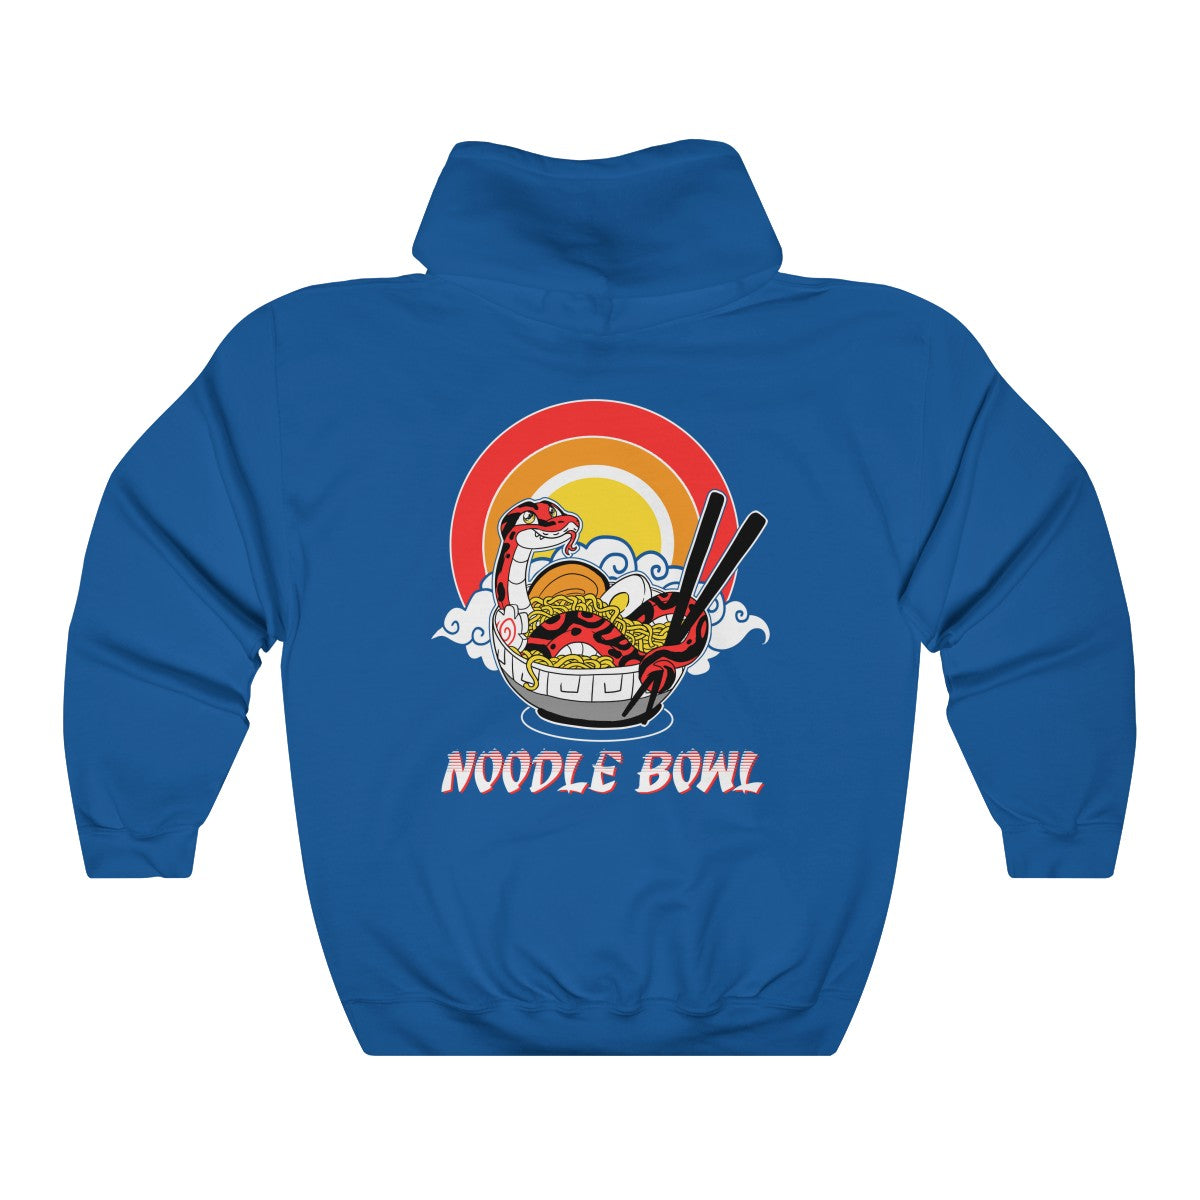 Noodle Bowl - Hoodie Hoodie Crunchy Crowe Royal Blue S 